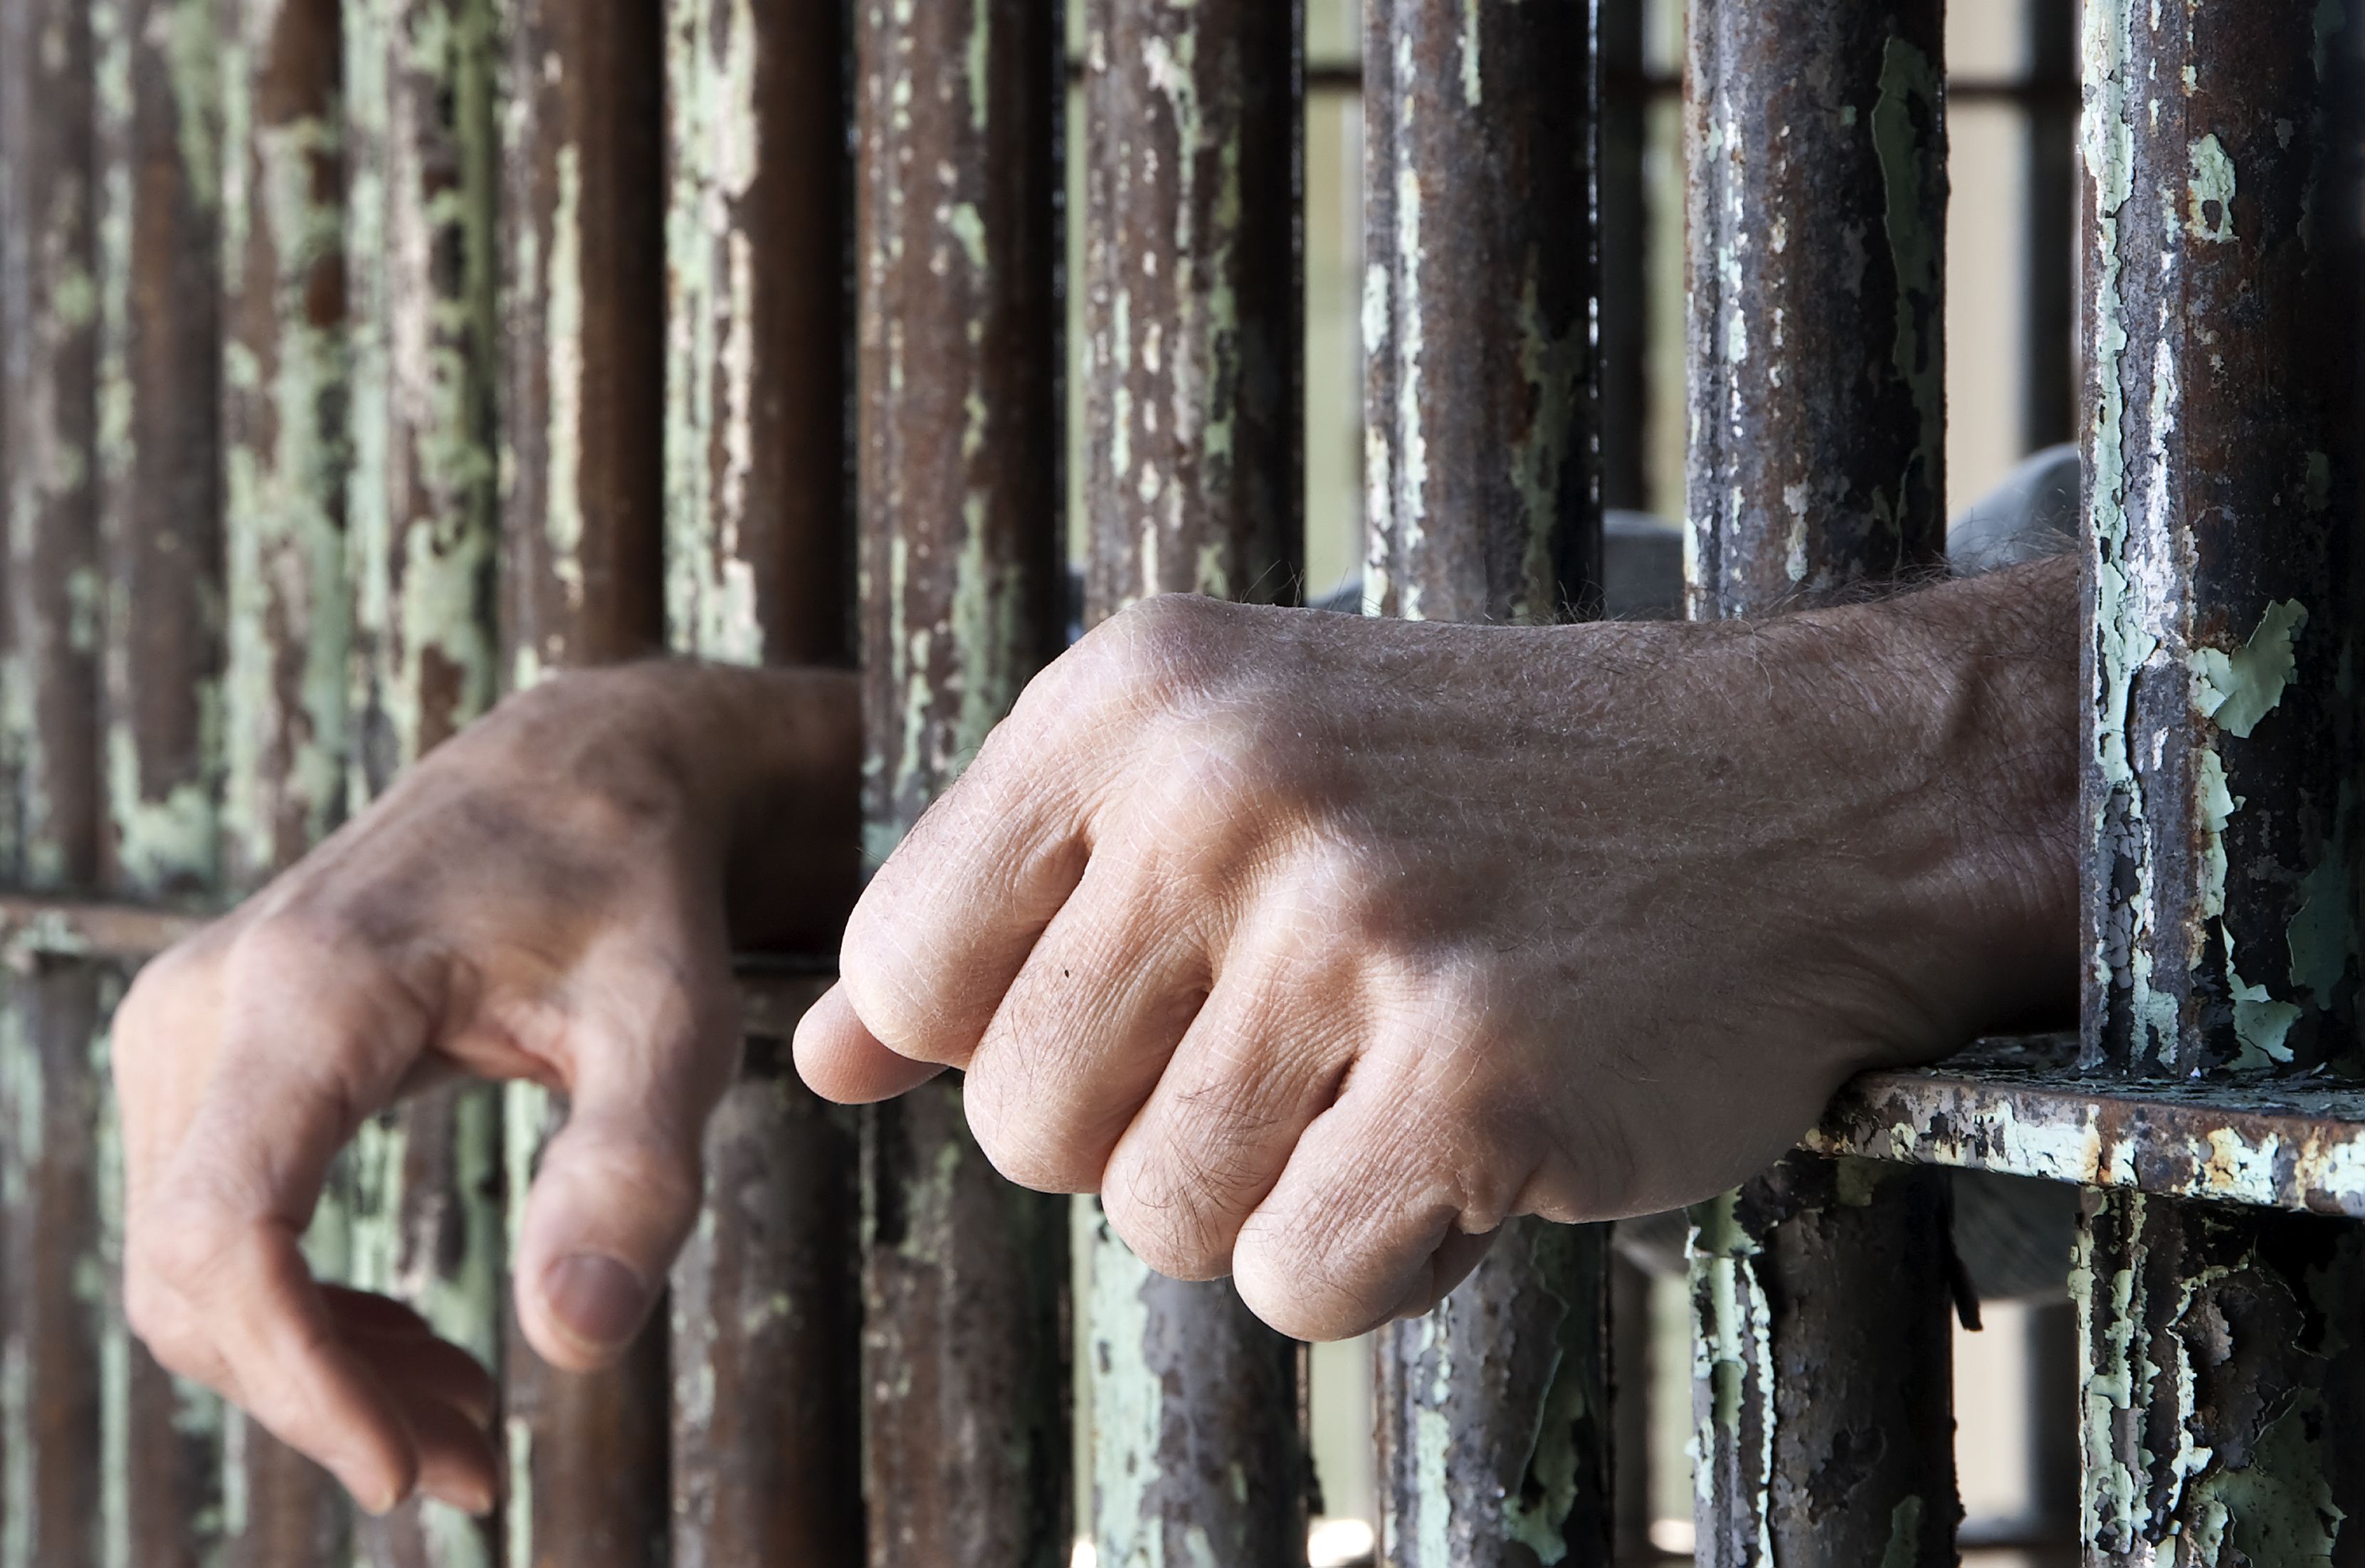 18 години след бруталния грабеж в Чепинци шестимата извършители получиха по 10 години затвор